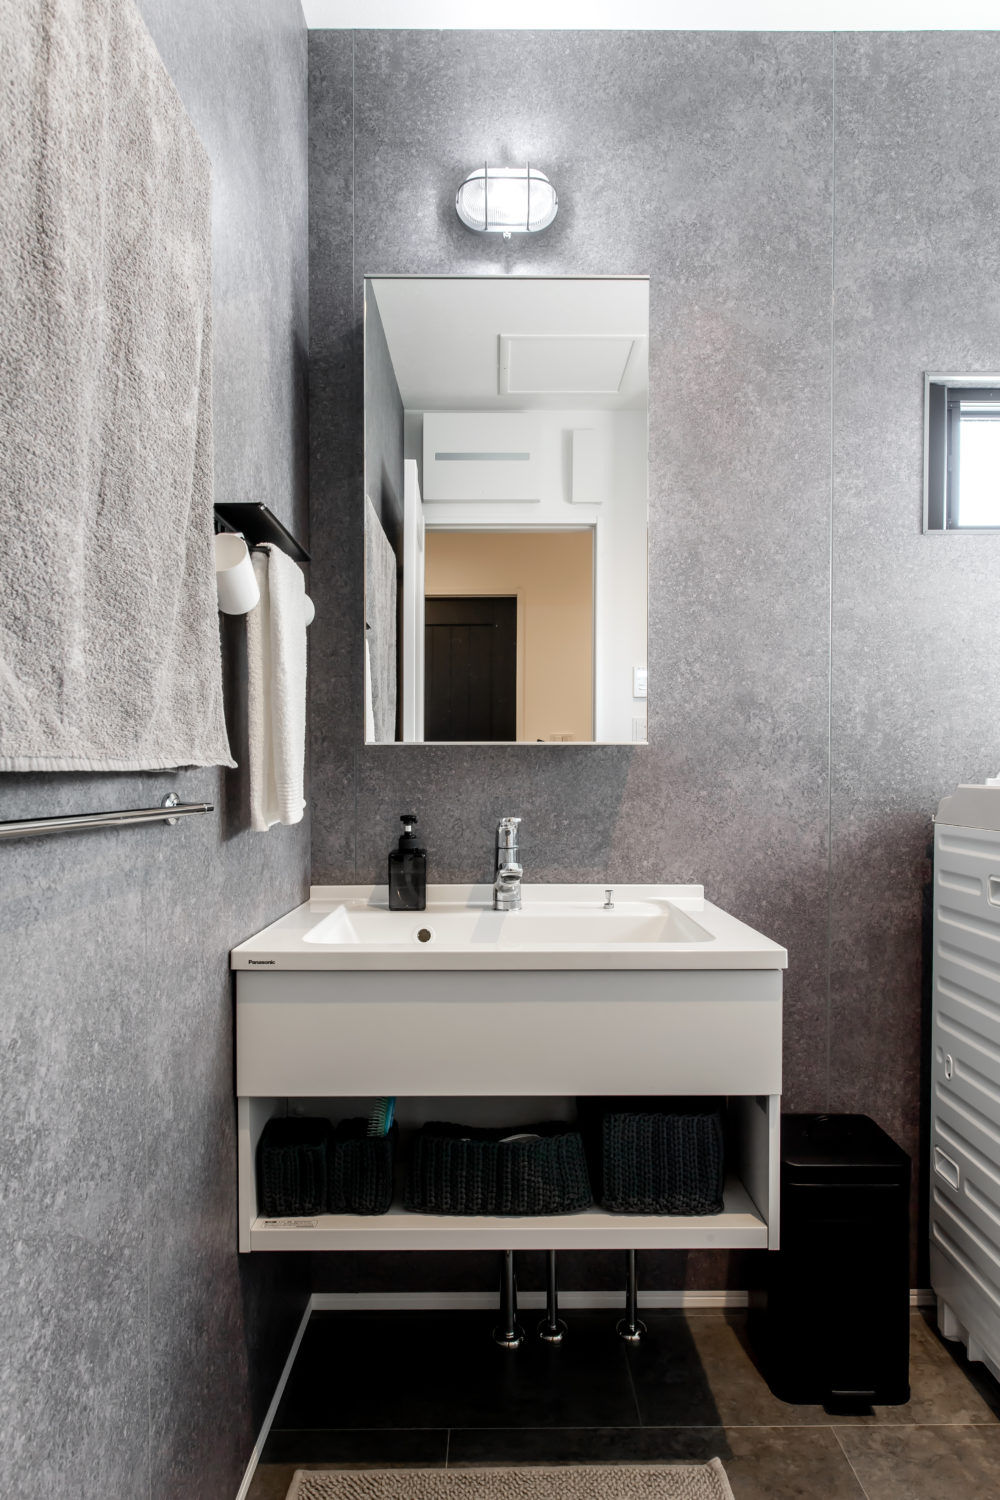 アイデザインホーム
注文住宅
岐阜県岐阜市
ホテルライクなフロートタイプの洗面化粧台と壁紙が印象的な洗面室です